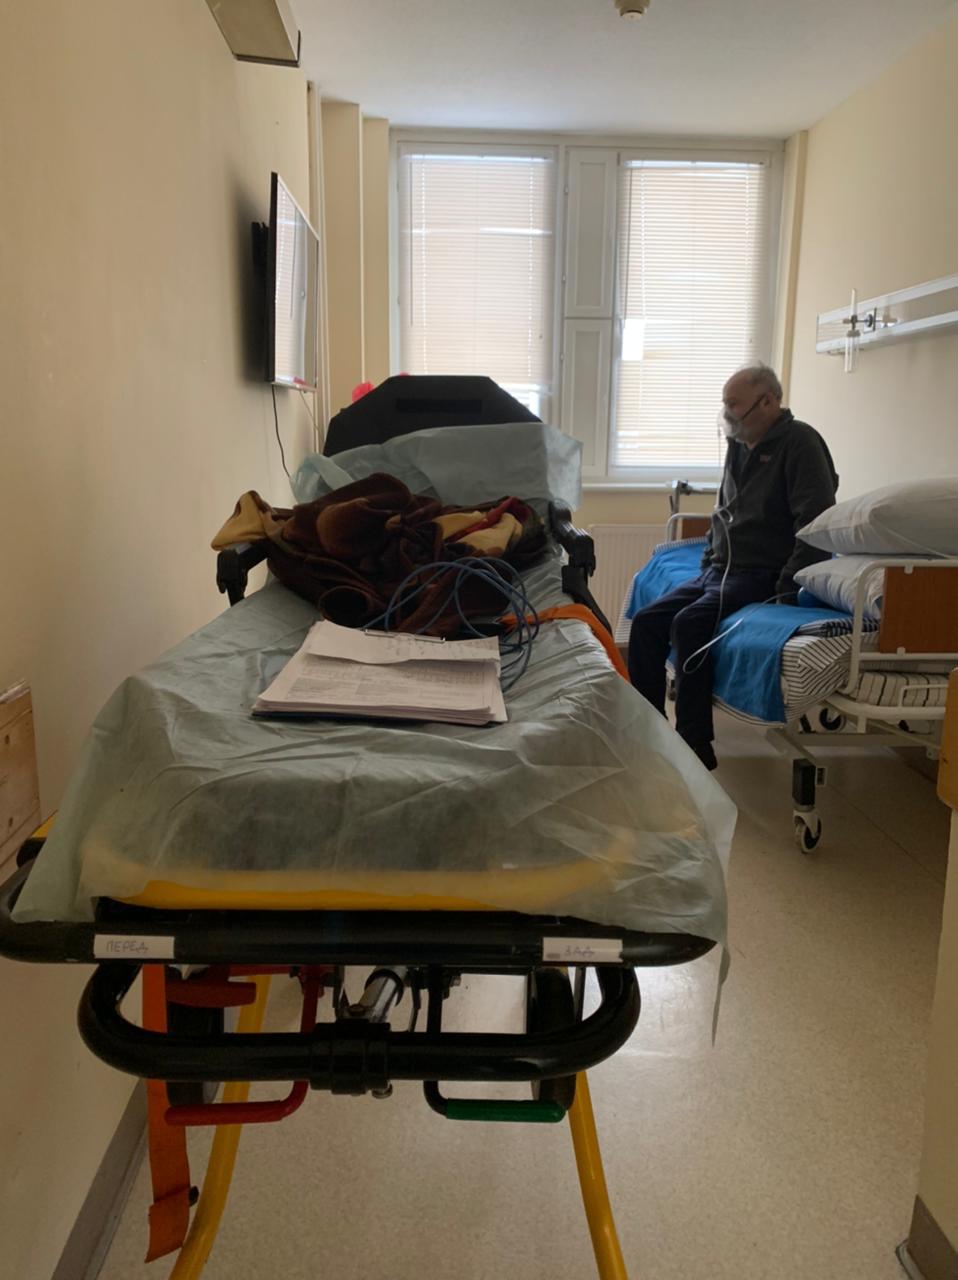 Транспортировка пациента из ГКБ15 в госпиталь Вишневского на реабилитацию после Сovid-19. 2